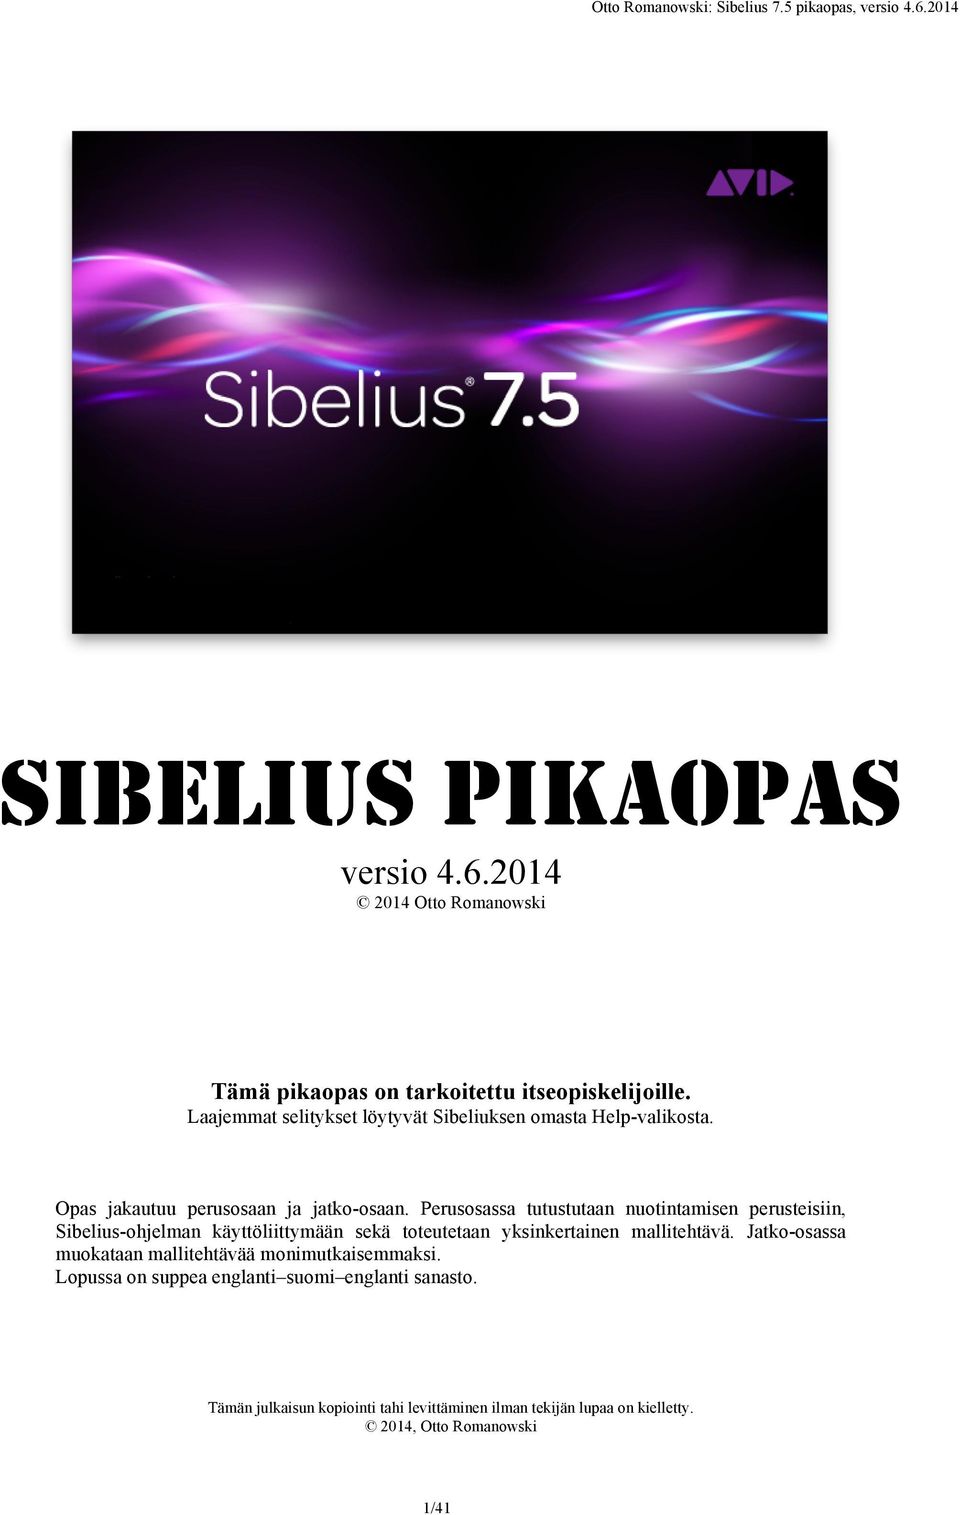 Perusosassa tutustutaan nuotintamisen perusteisiin, Sibelius-ohjelman käyttöliittymään sekä toteutetaan yksinkertainen mallitehtävä.